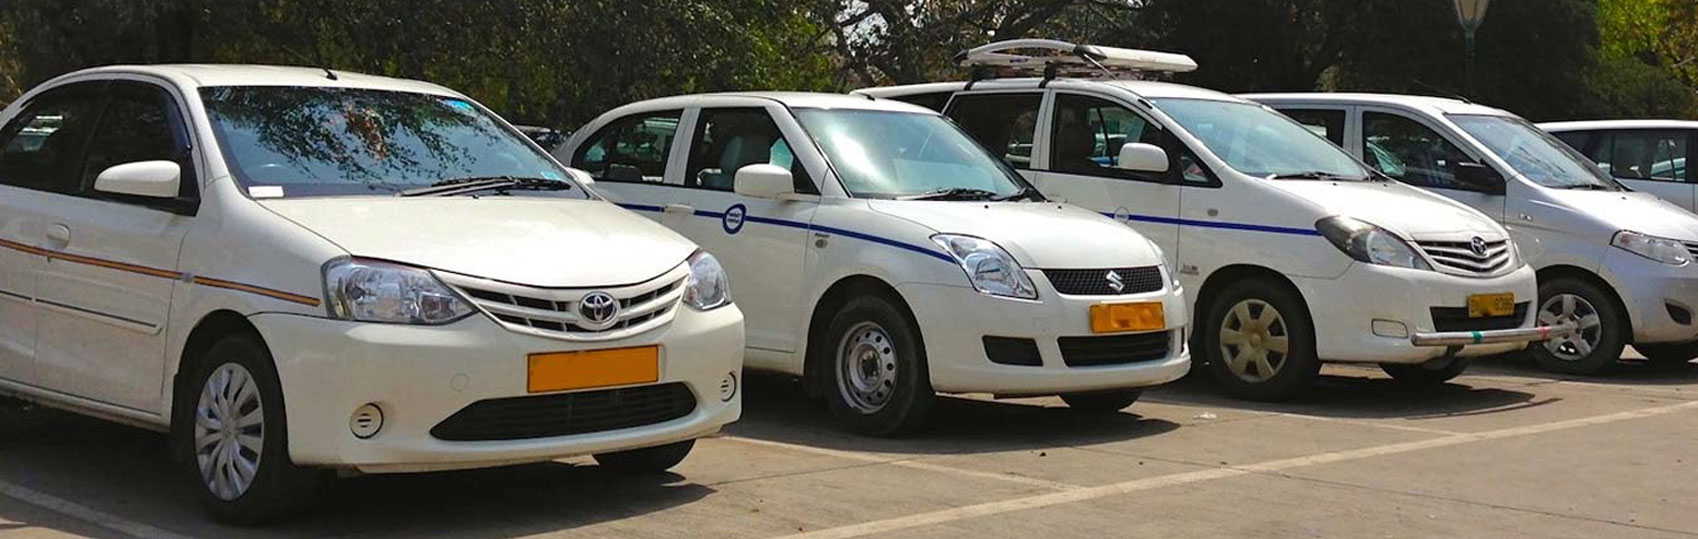 Delhi to shimla cab service